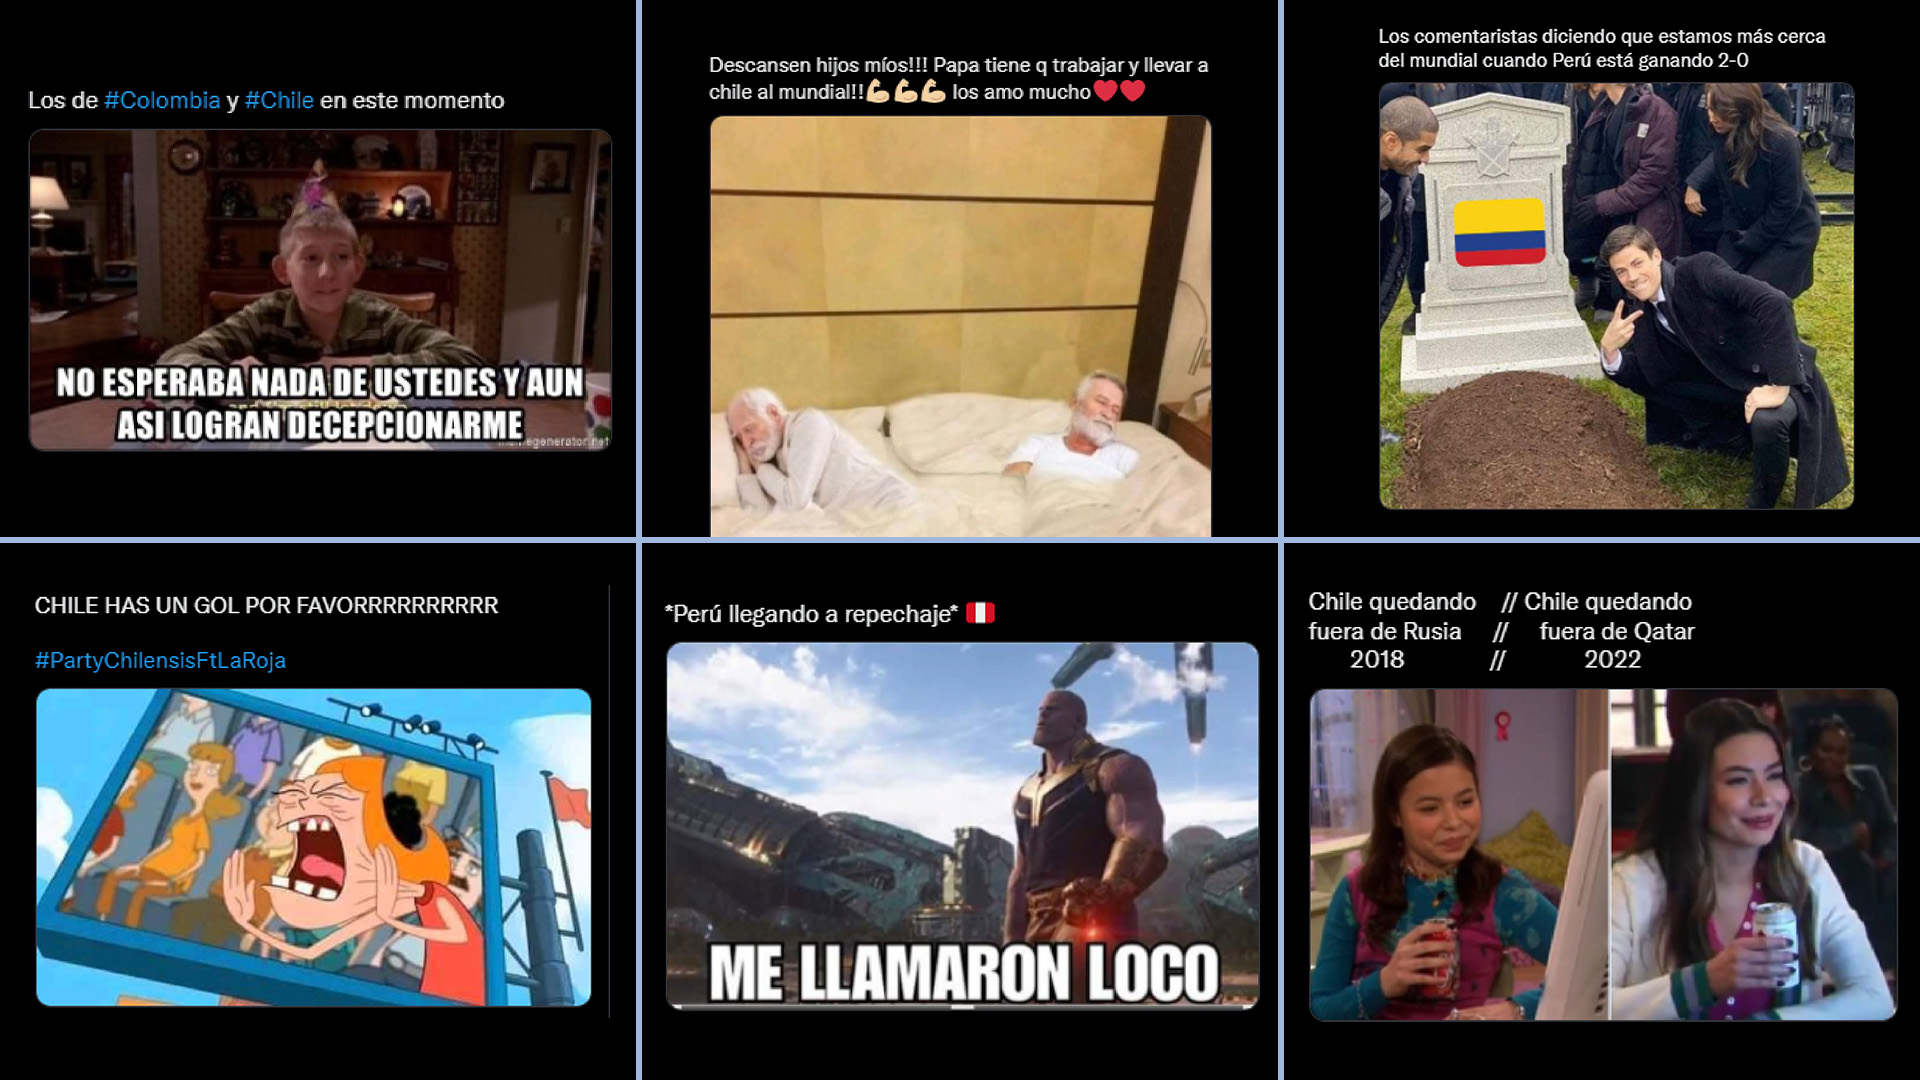 Los memes sobre Chile y Colombia